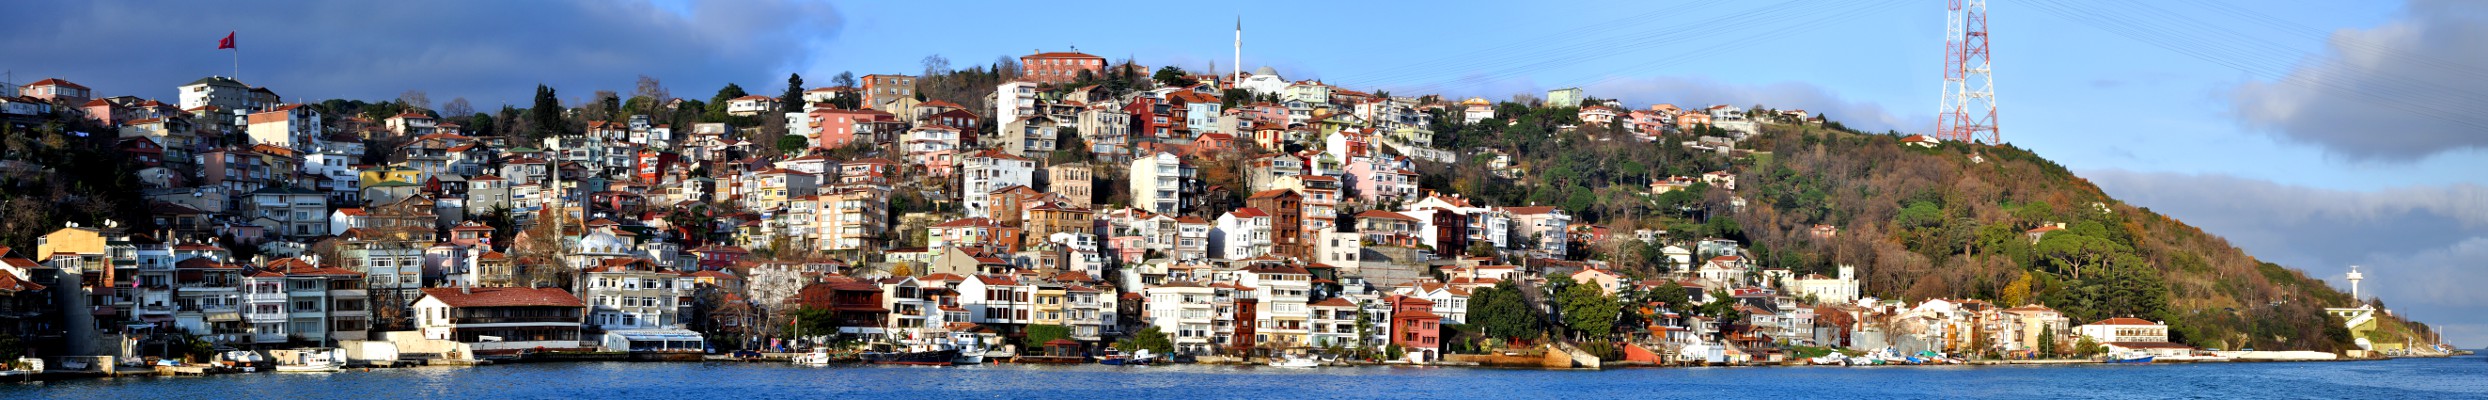 Bosphorus - Sariyer